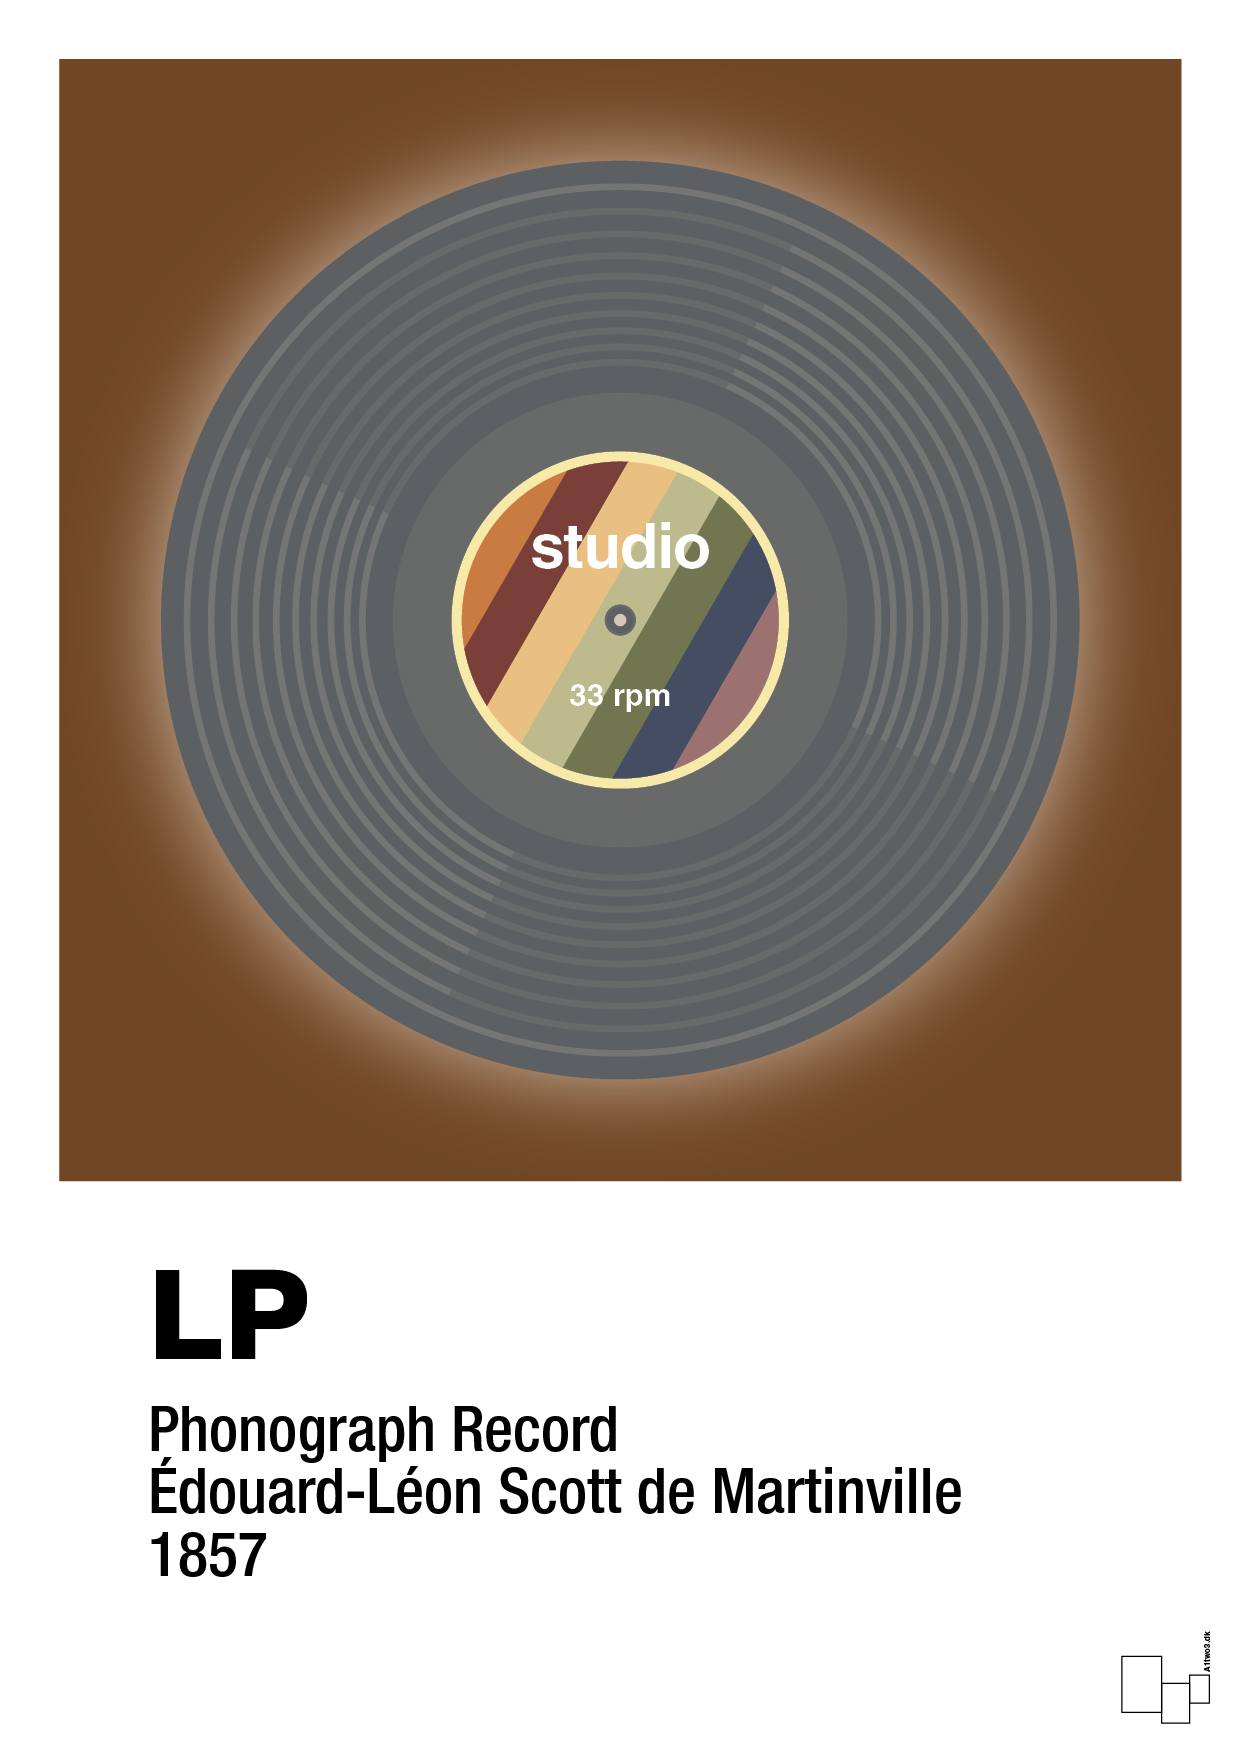 vinylplade 33rpm - Plakat med Grafik i Dark Brown